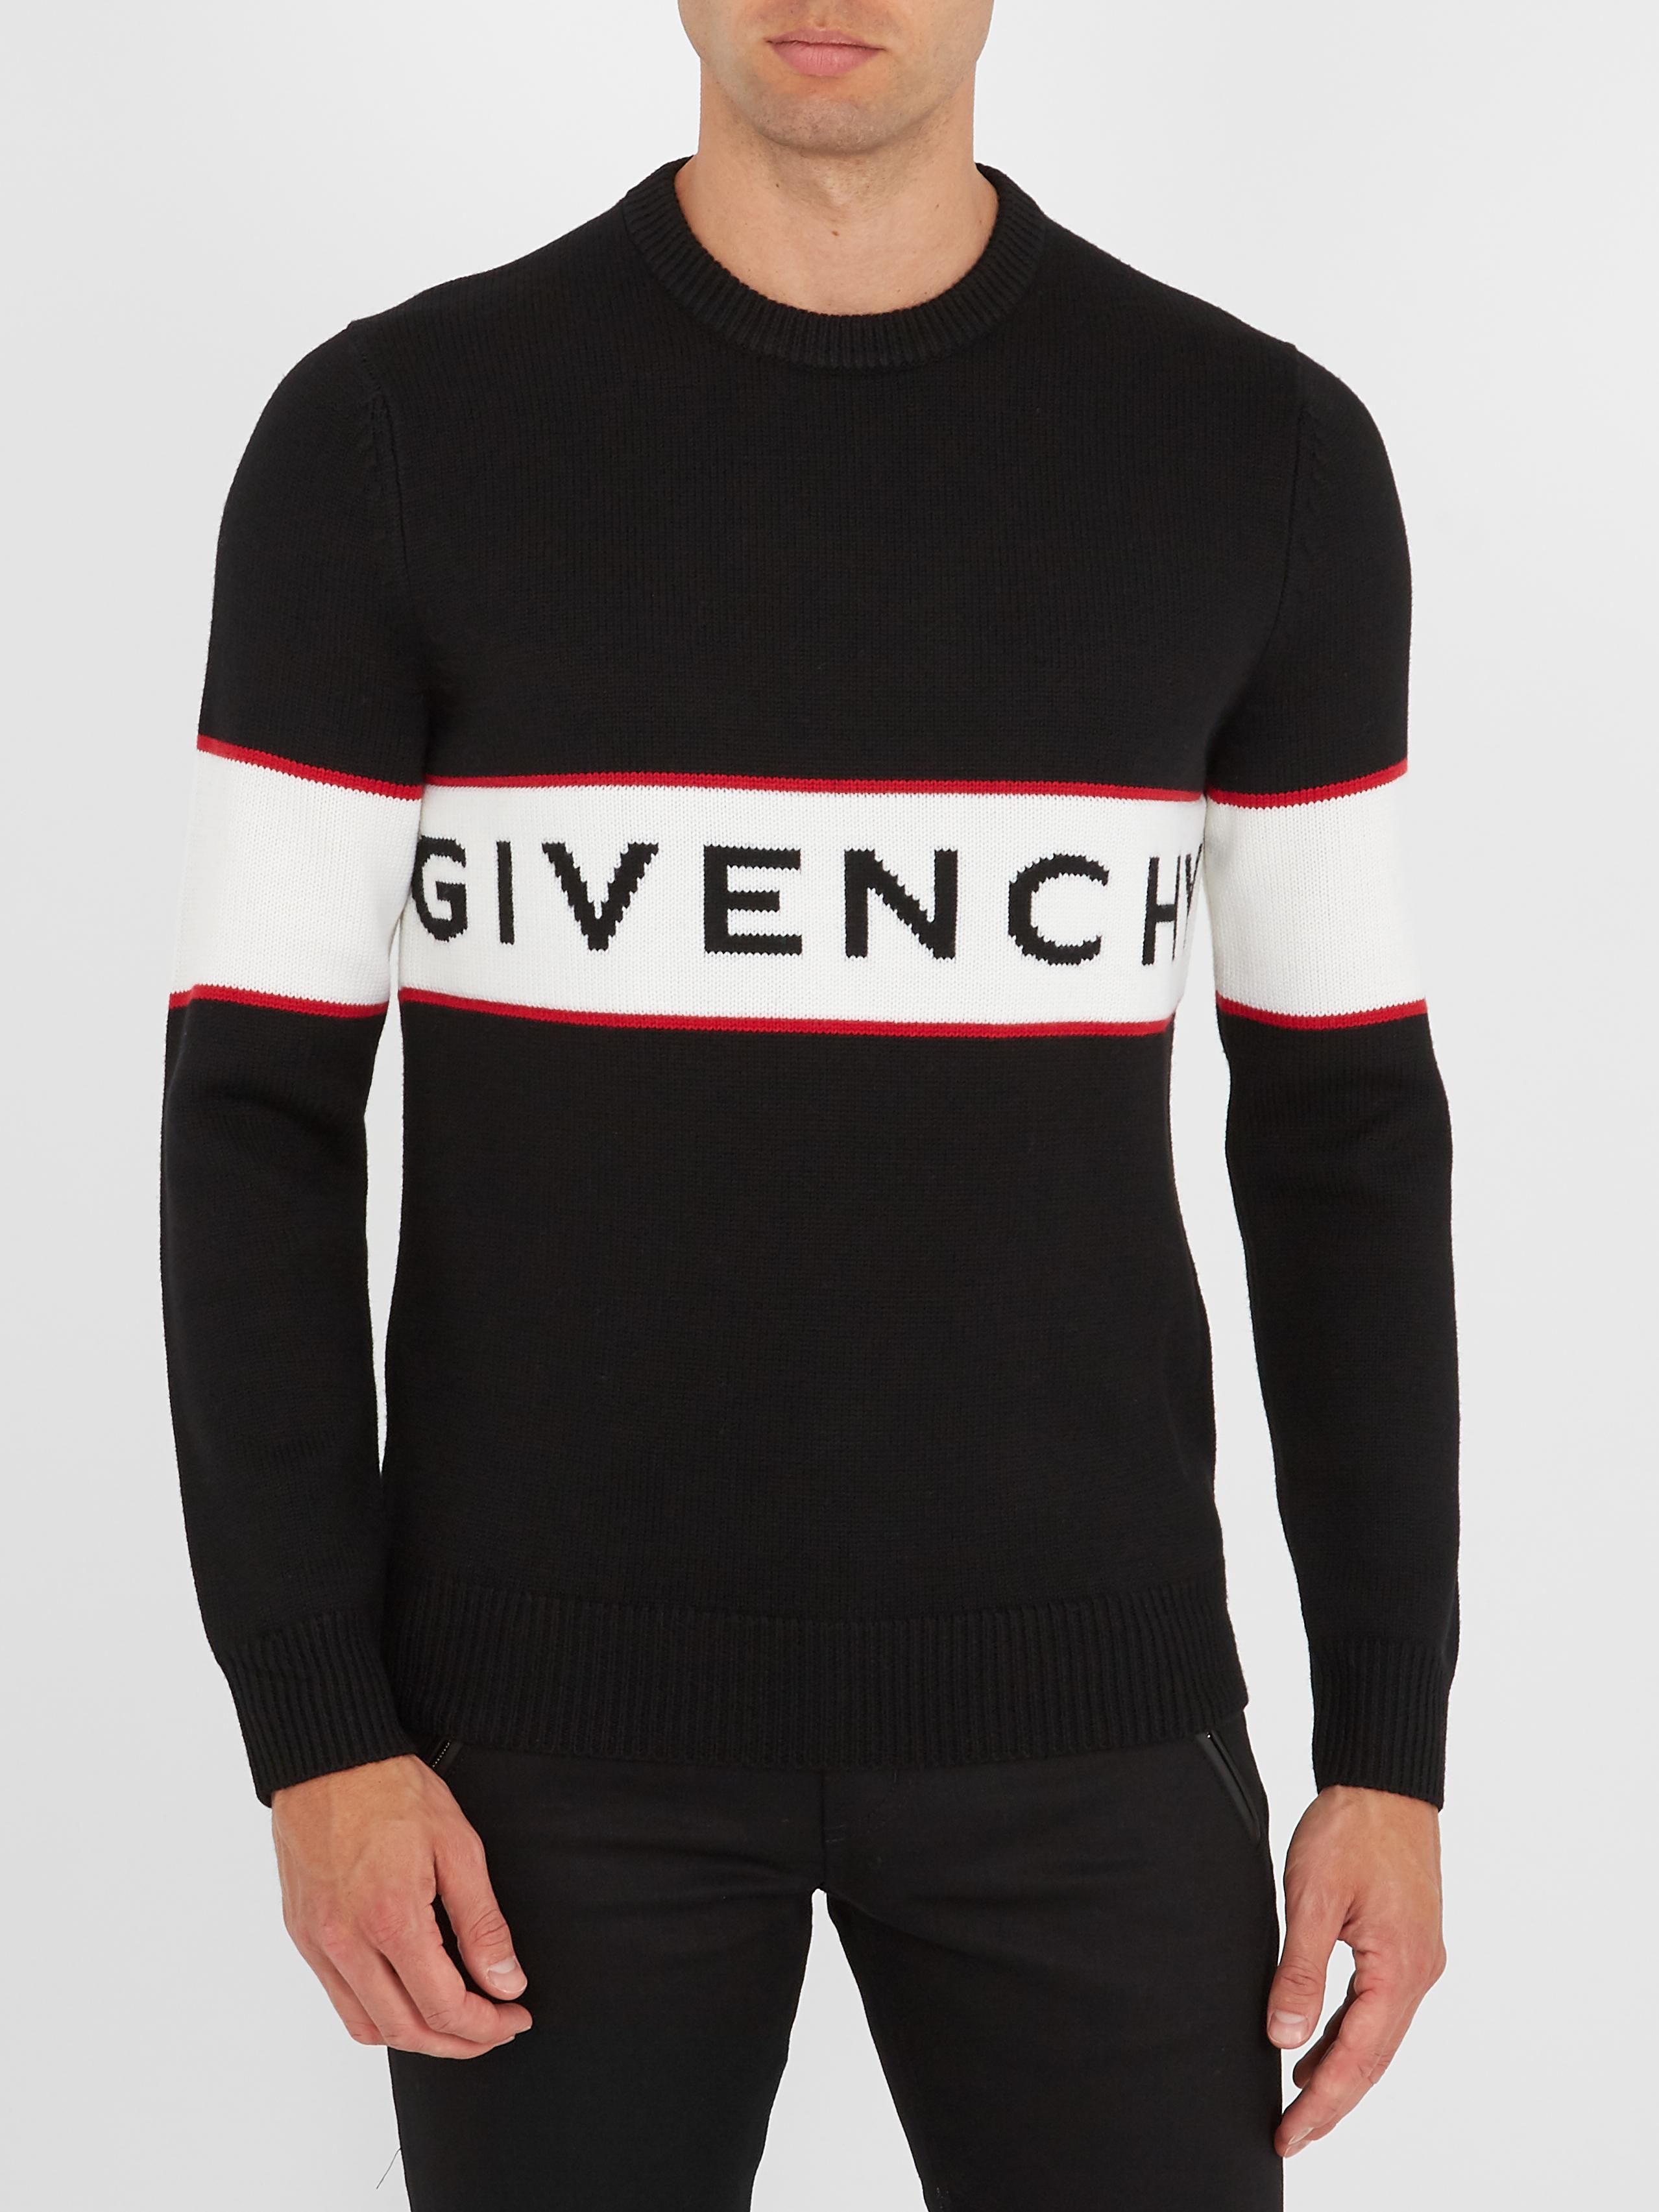 Givenchy Logo Knit Jumper in Black for Men - Lyst